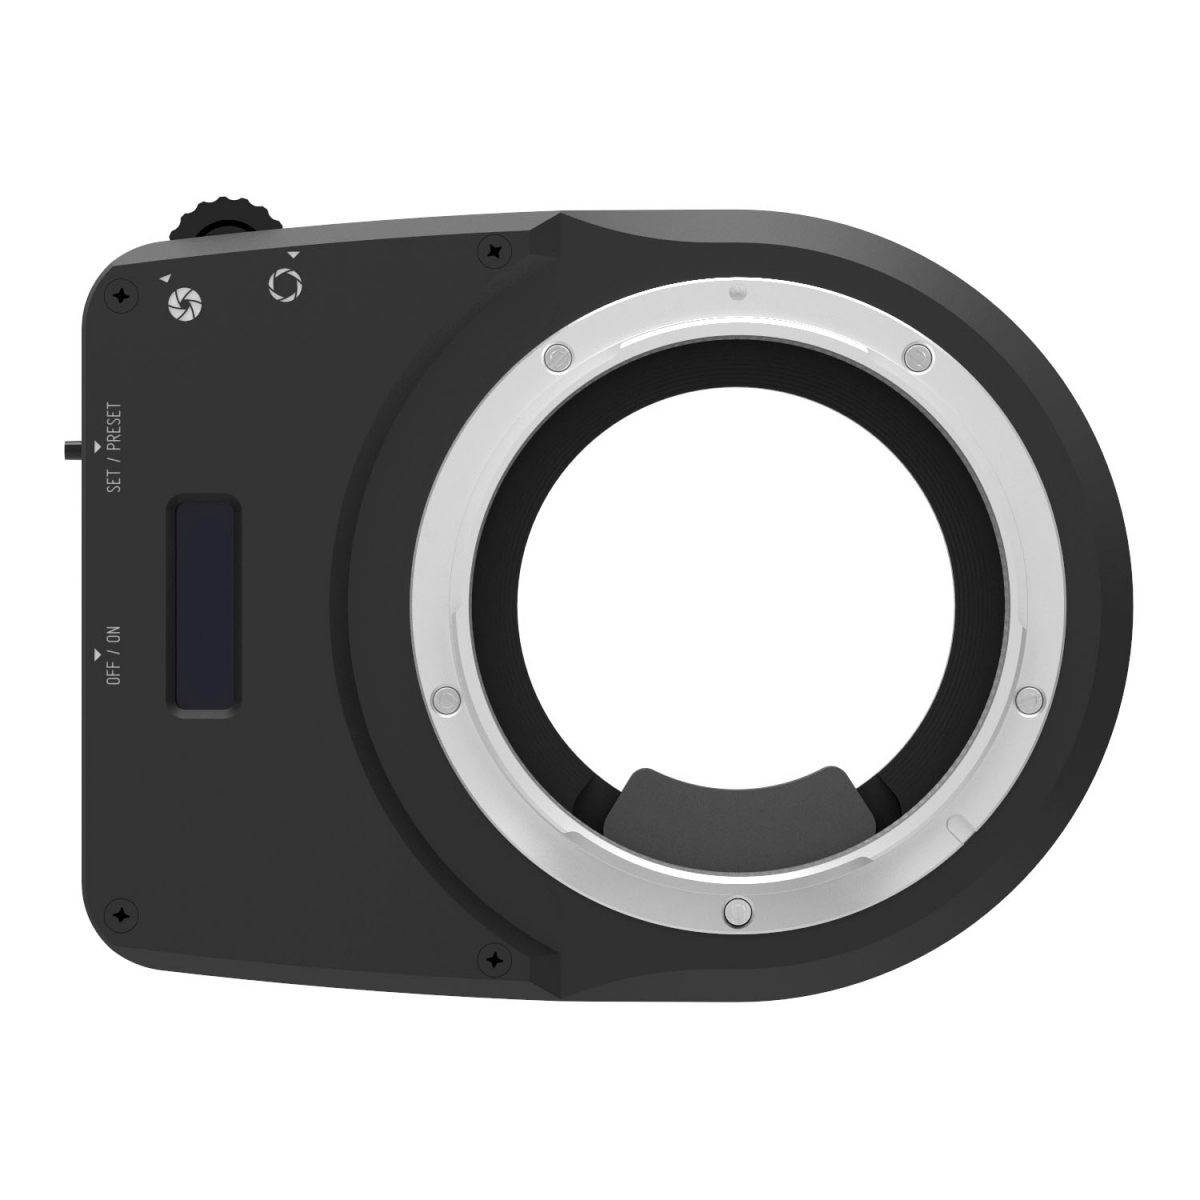 CAMBO CA-GFX adapter met electronische diafragmasturing, om Canon EF lenzen te gebruiken op de Fuji GFX bodies